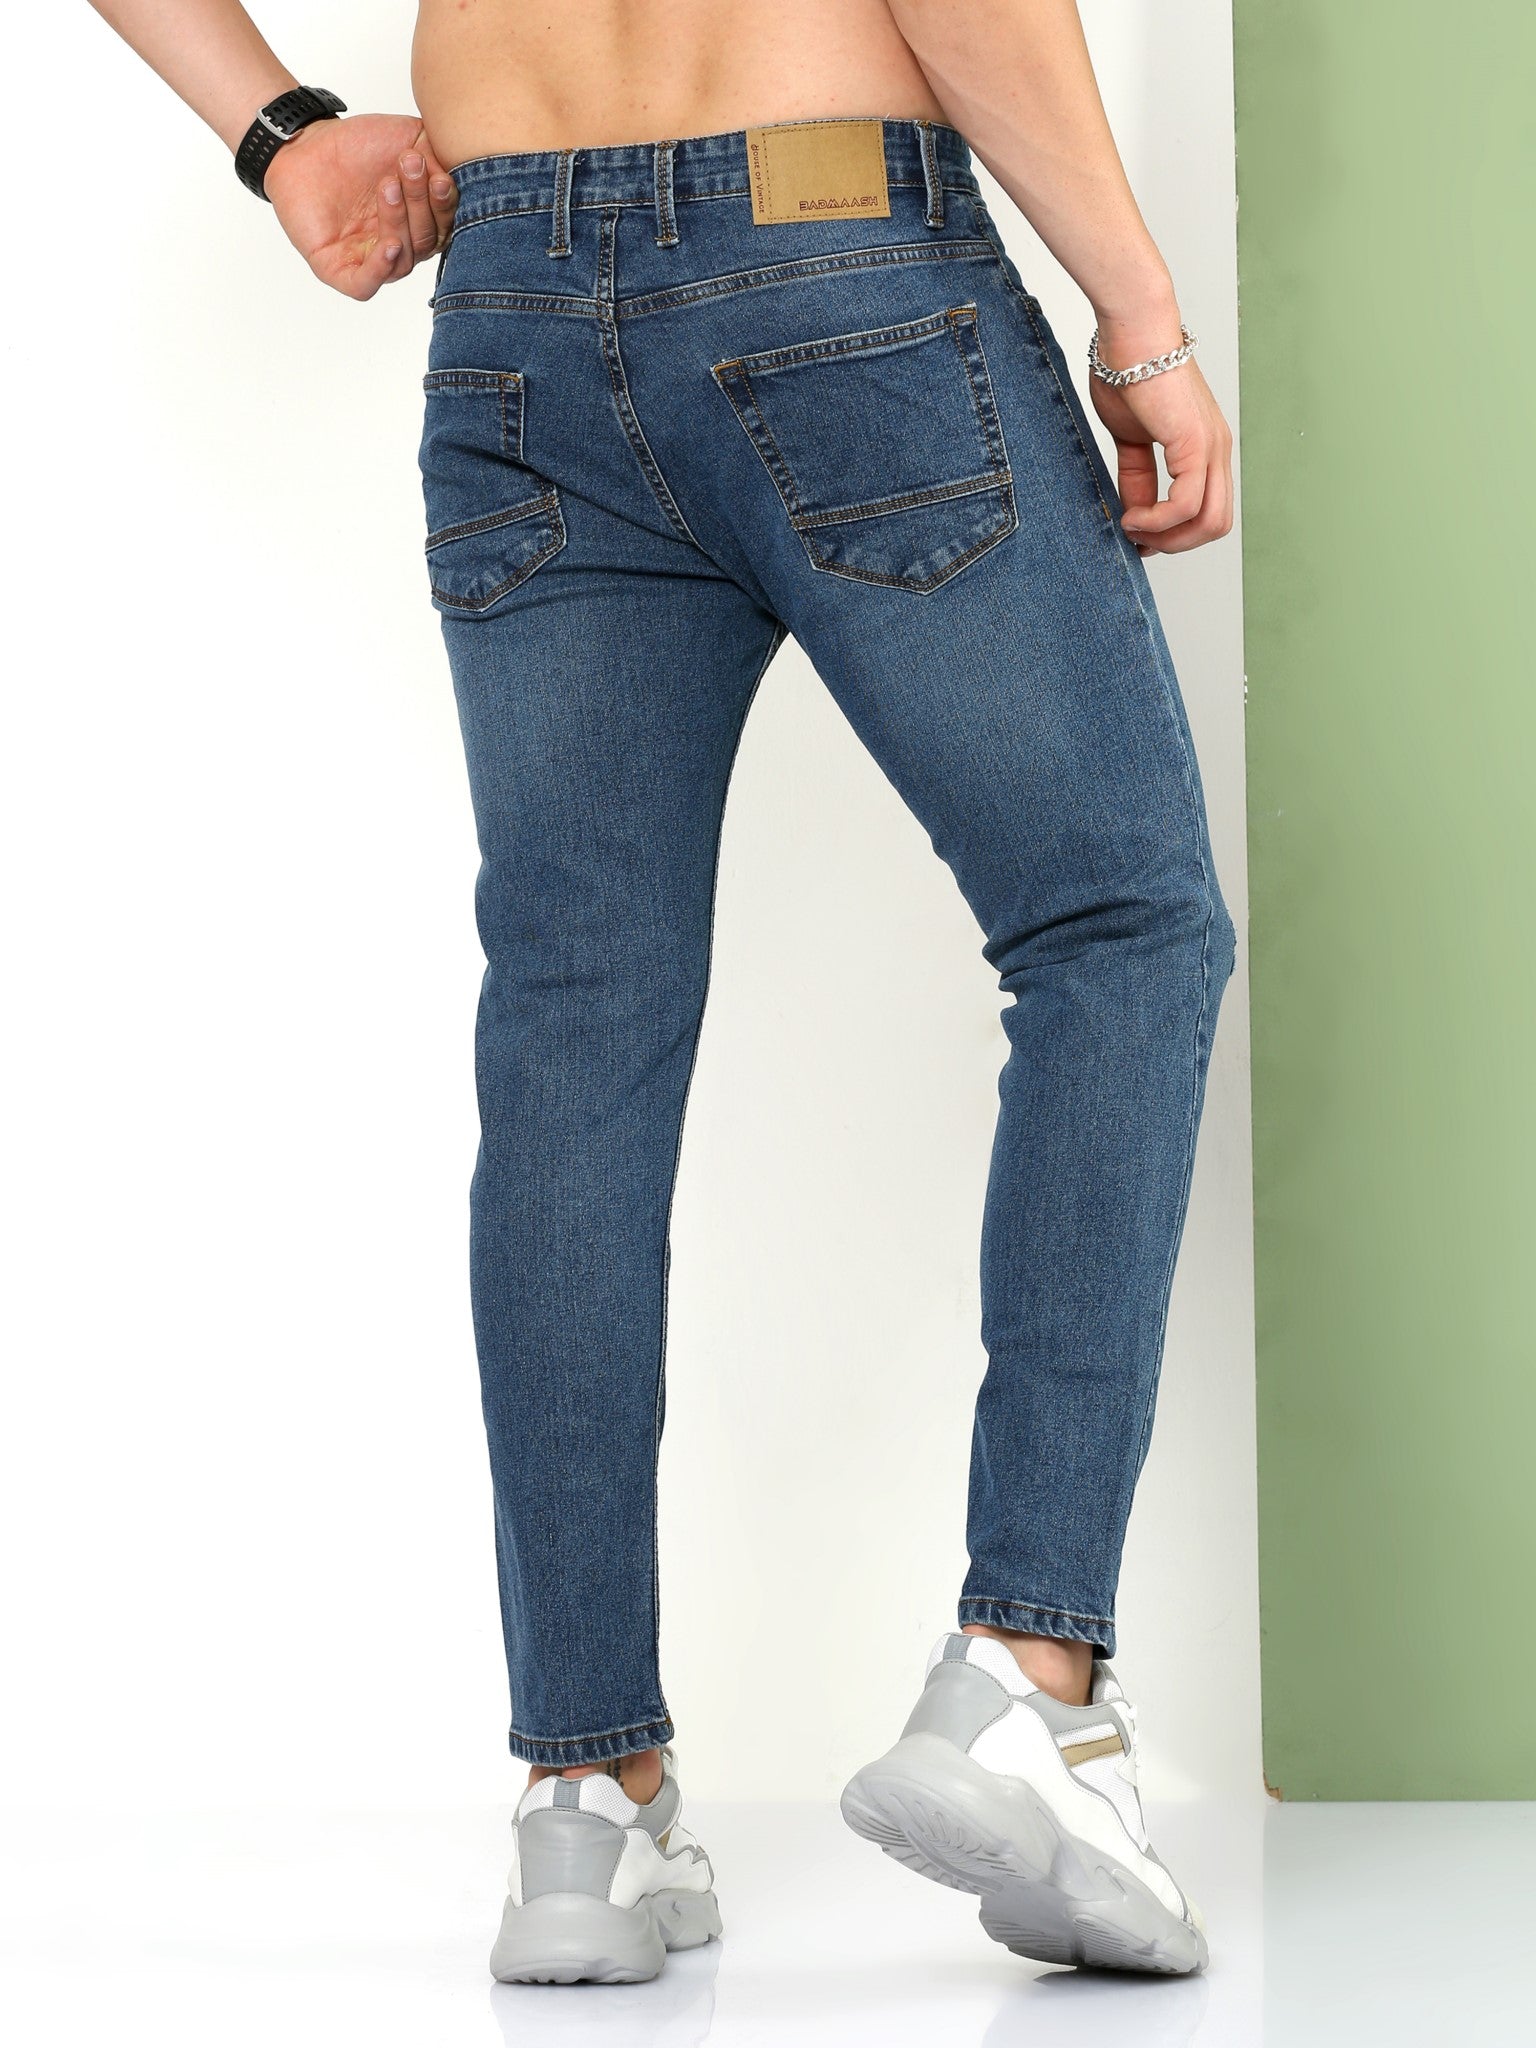 Duplikere Udøve sport Saml op Shop Regatta Blue Skinny Jeans Online – Badmaash